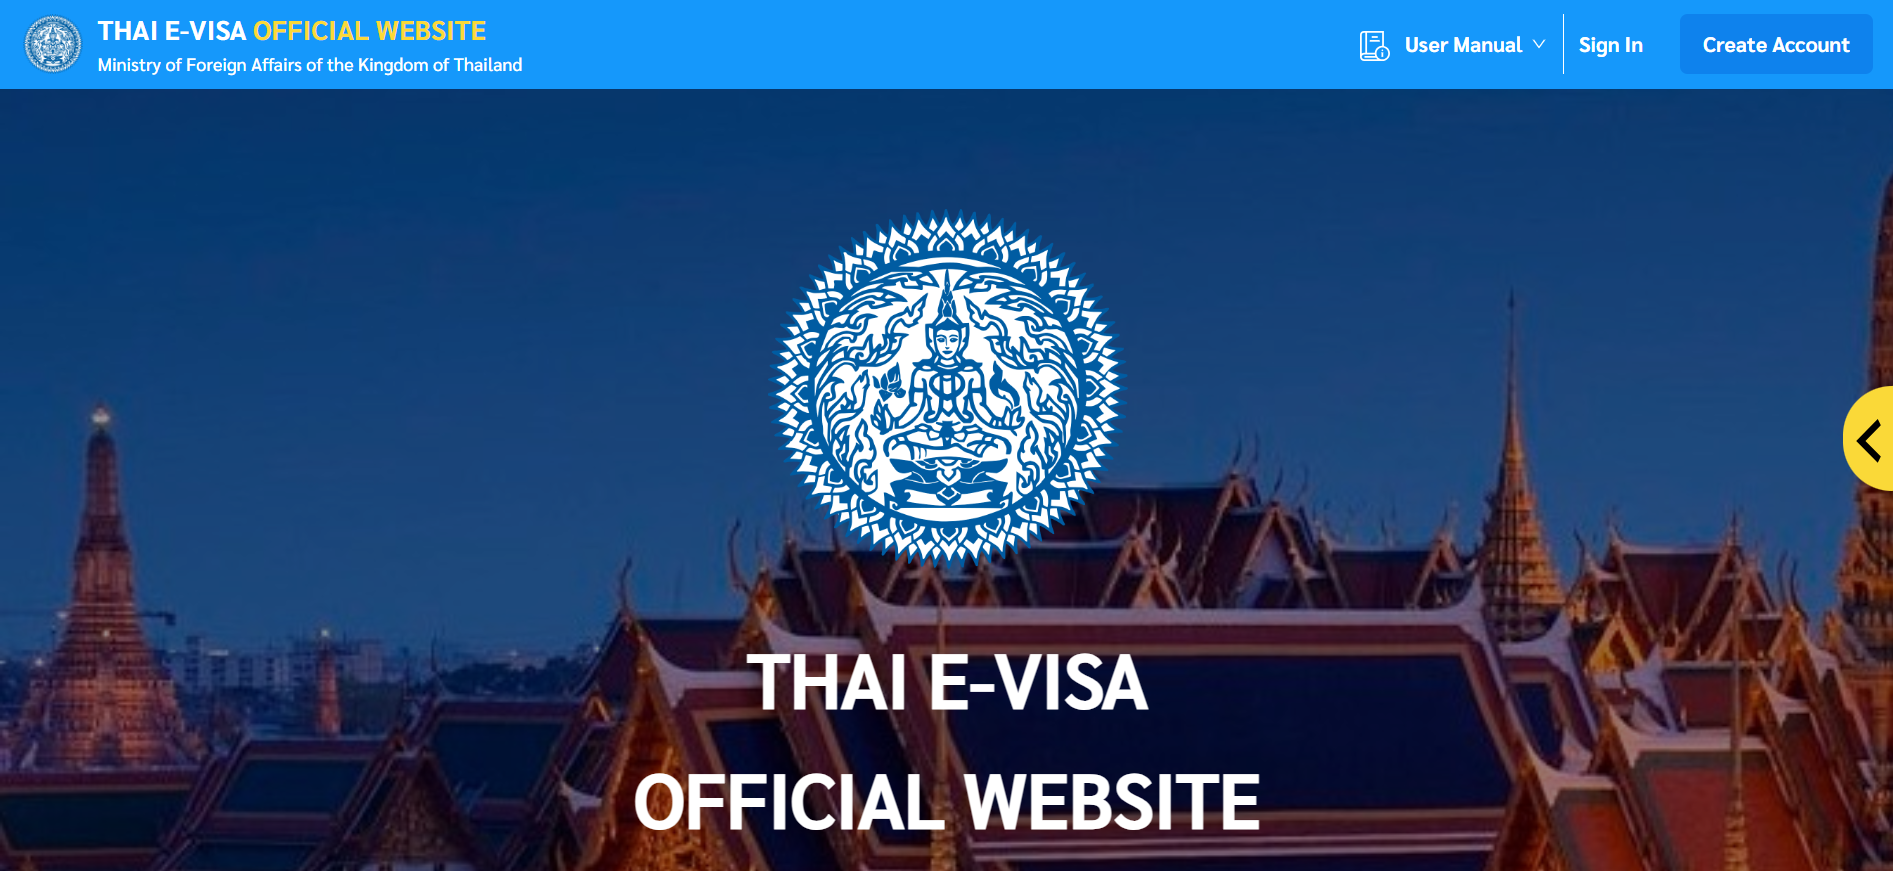 thailand e visa official website